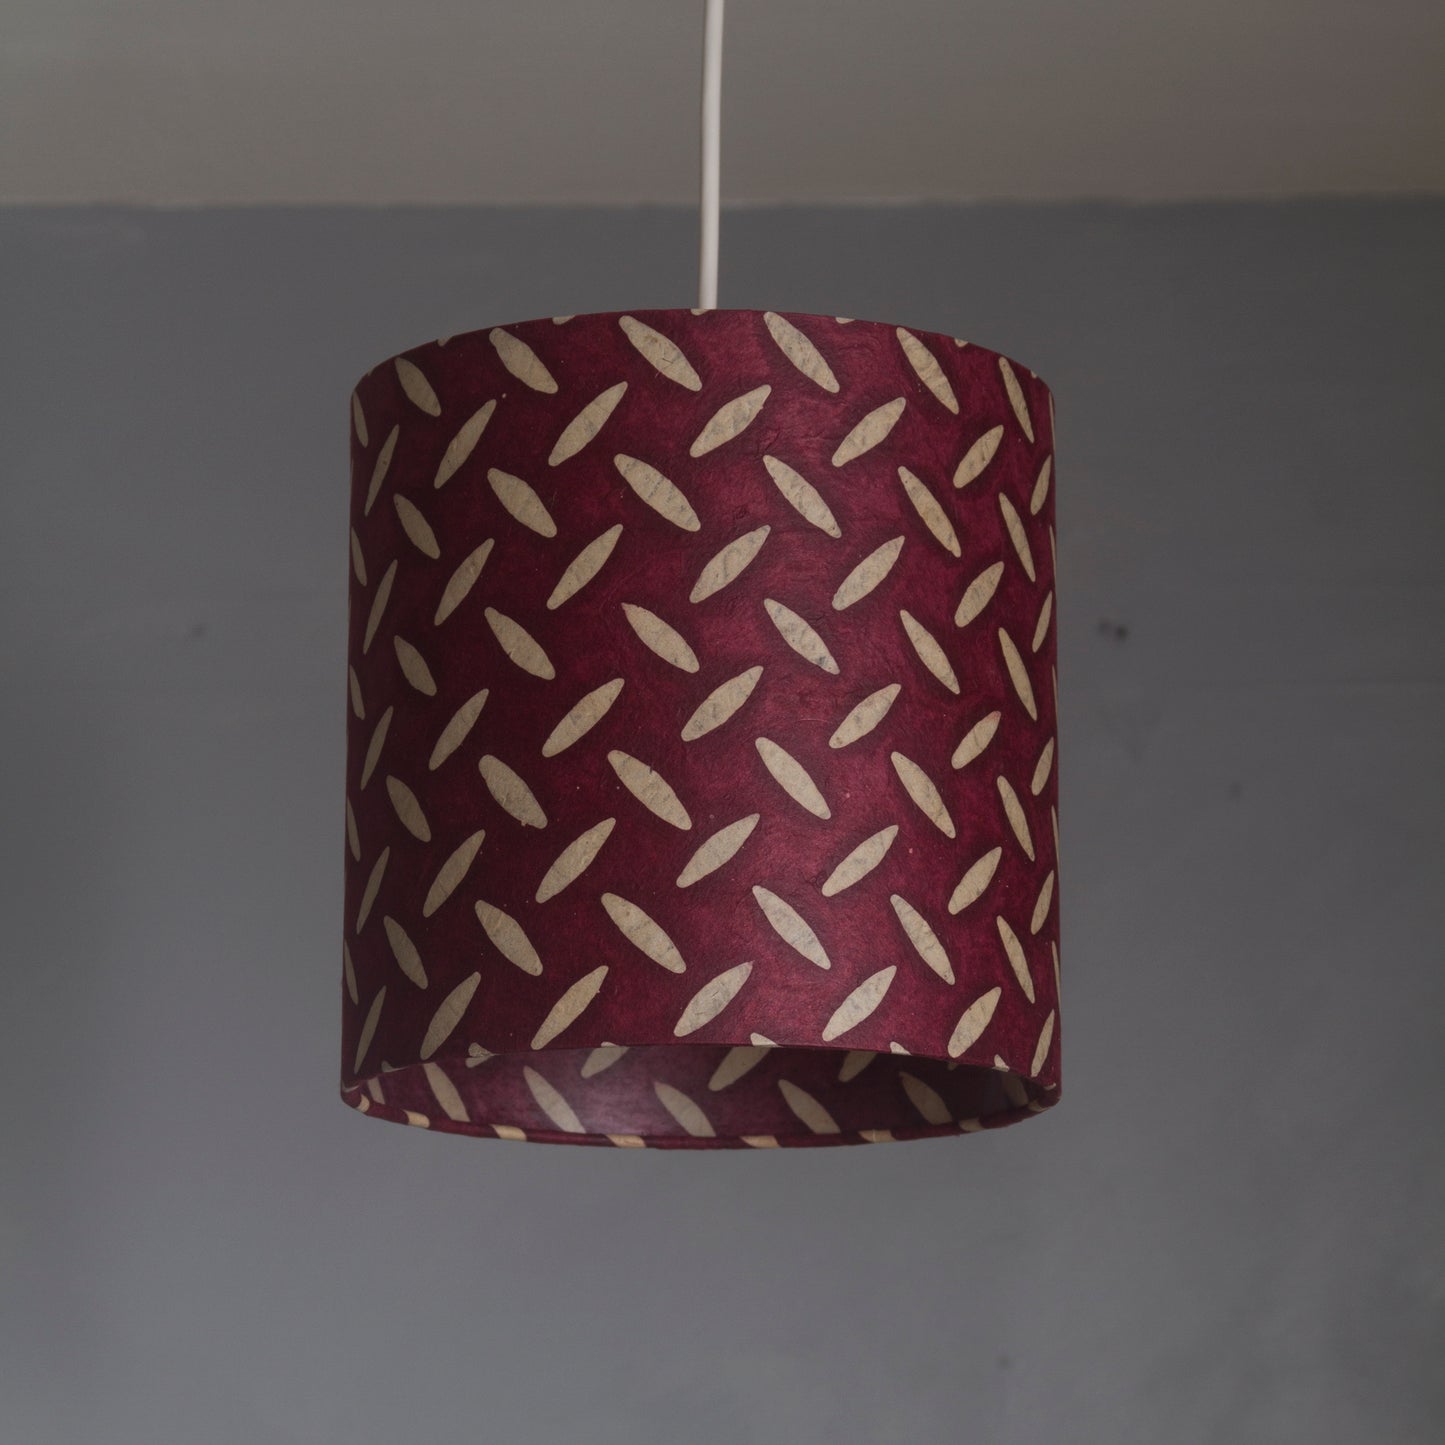 2 Tier Lamp Shade - P14 - Batik Tread Plate Cranberry, 40cm x 20cm & 30cm x 15cm